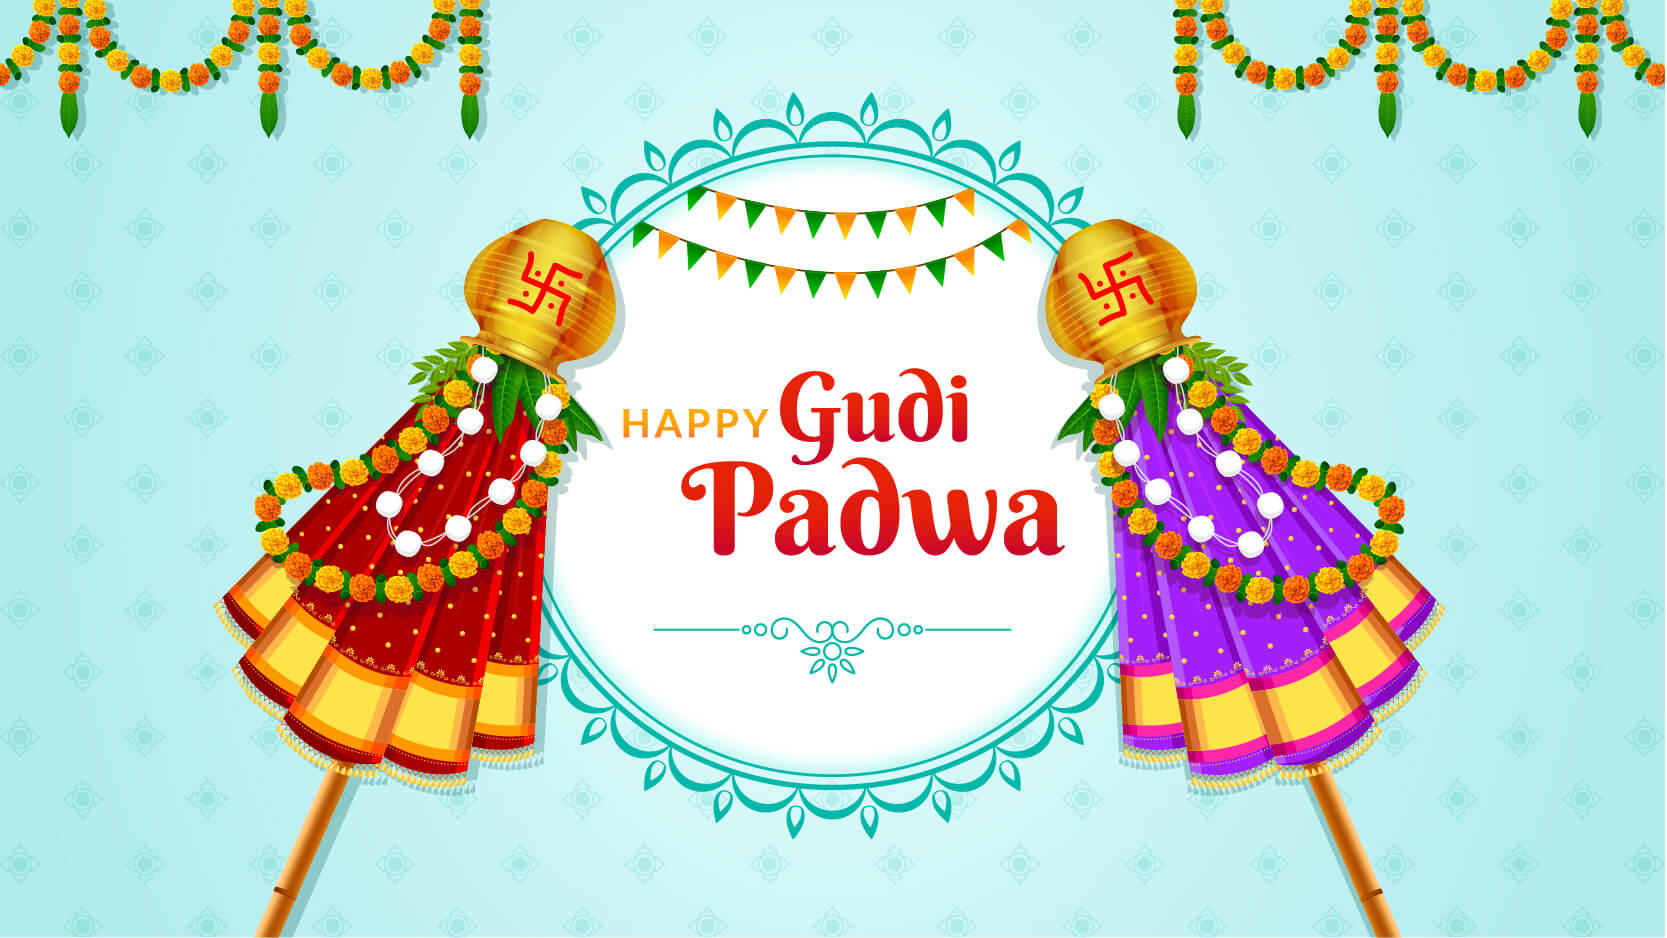 6 Ways To Celebrate Gudi Padwa In 2021 Lockdown